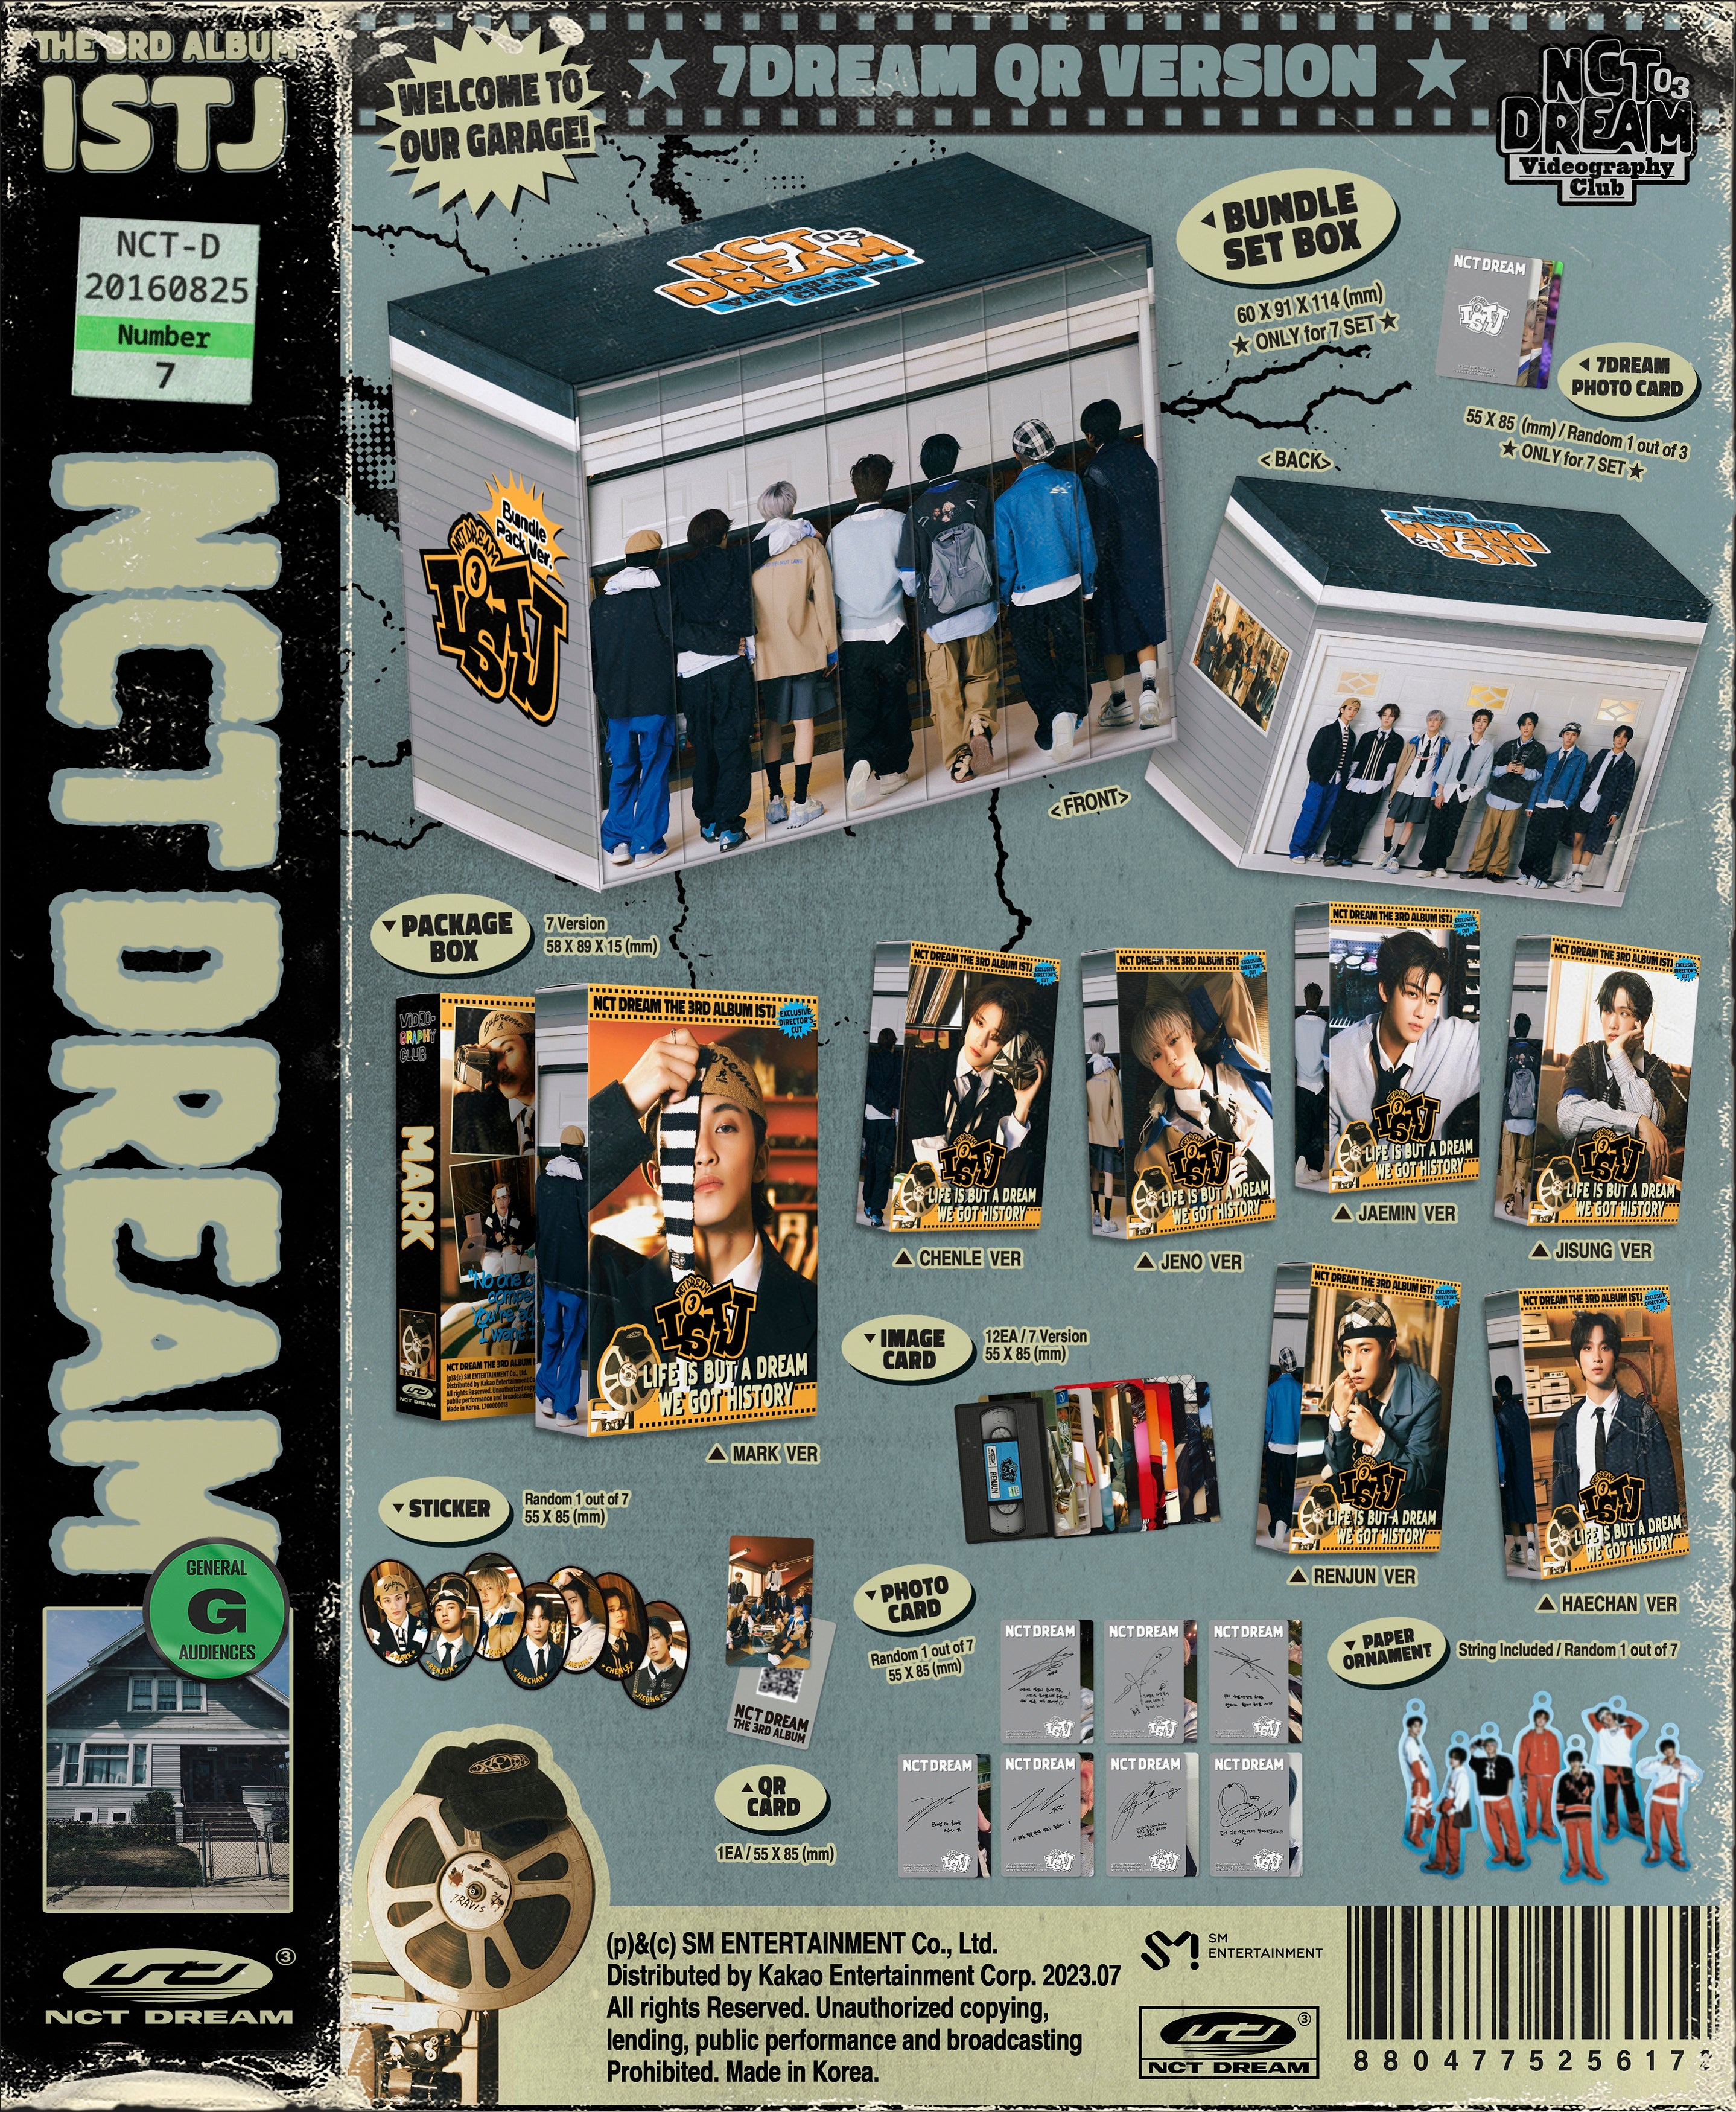 NCT DREAM 3RD ALBUM 'ISTJ' (7DREAM QR) DETAIL